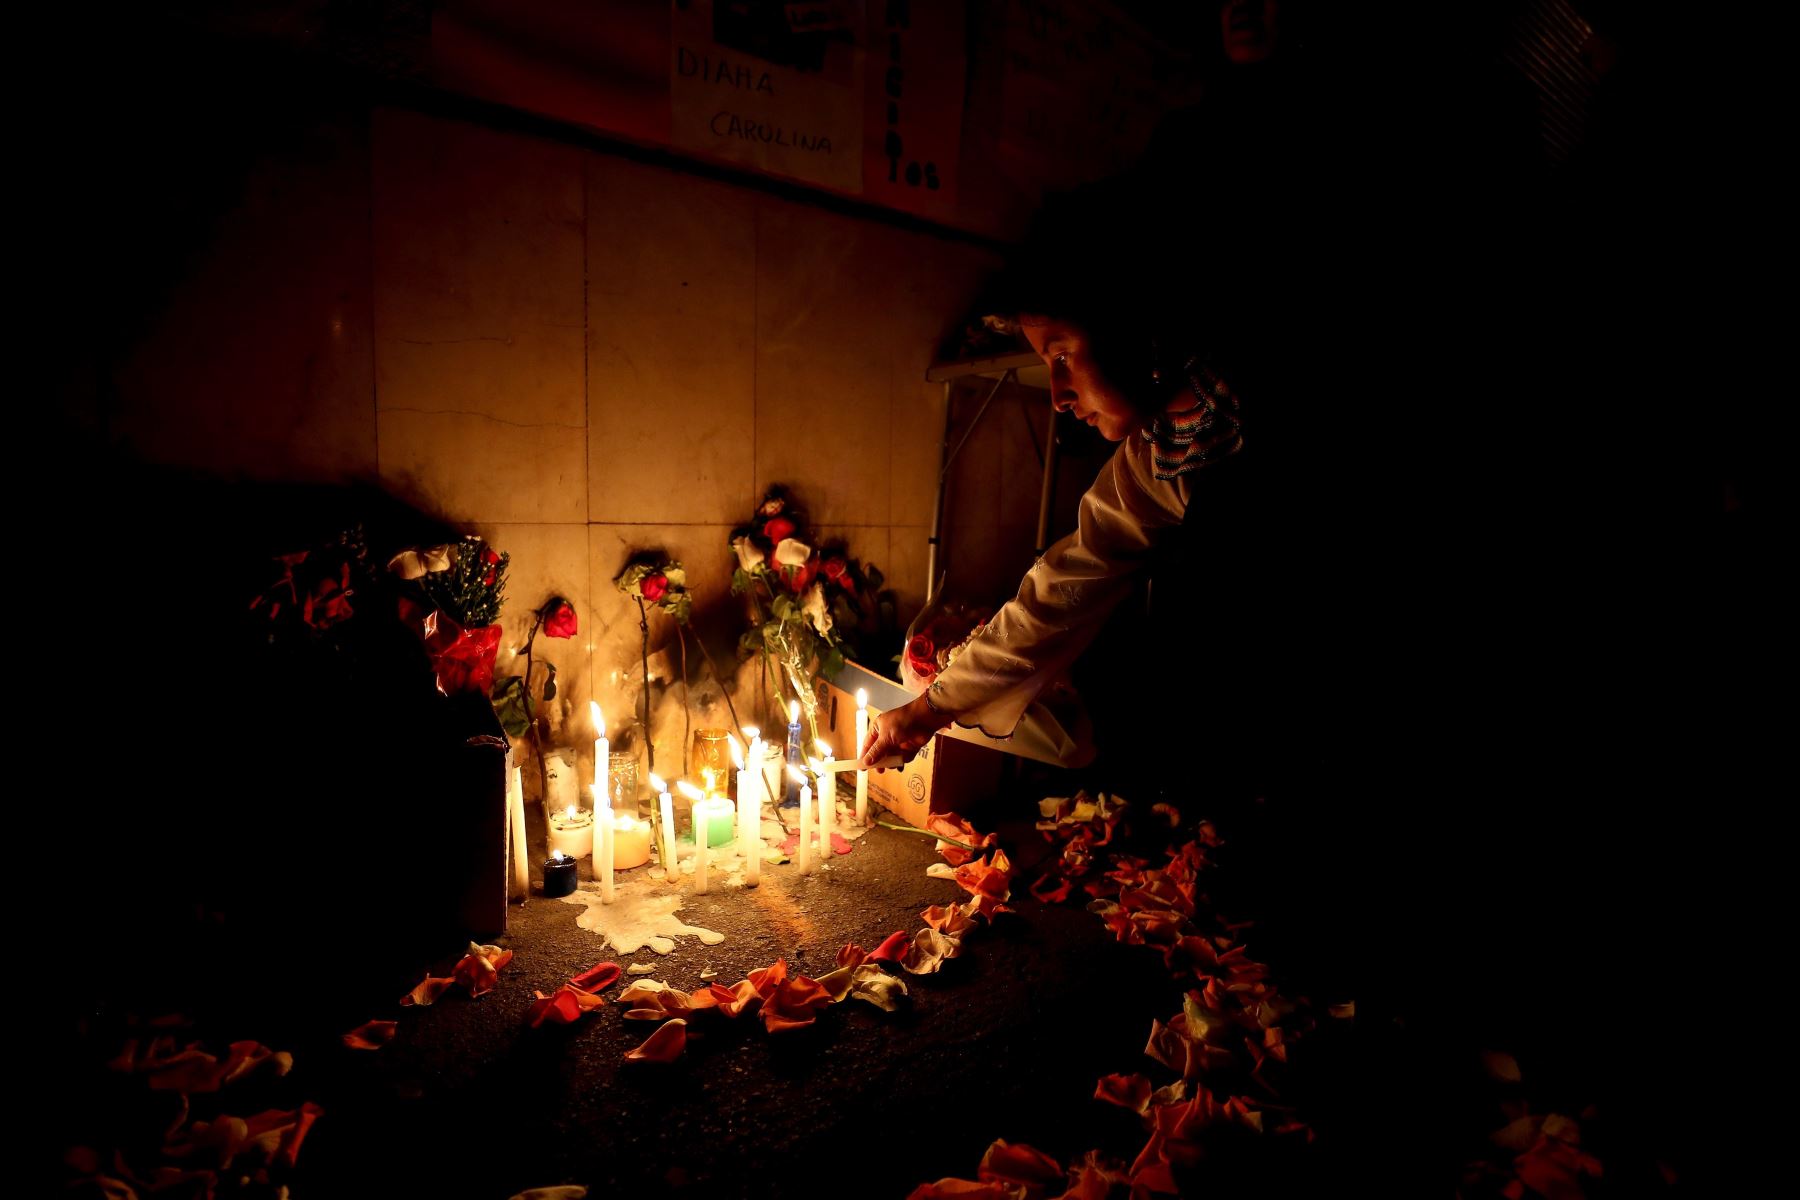 Ciudadanos ecuatorianos levantan un altar en memoria de la mujer que fue asesinada el sábado pasado por su pareja, un venezolano, en la ciudad de Ibarra (Ecuador). El asesinato desató la reacción xenófoba de una turba. Foto: EFE